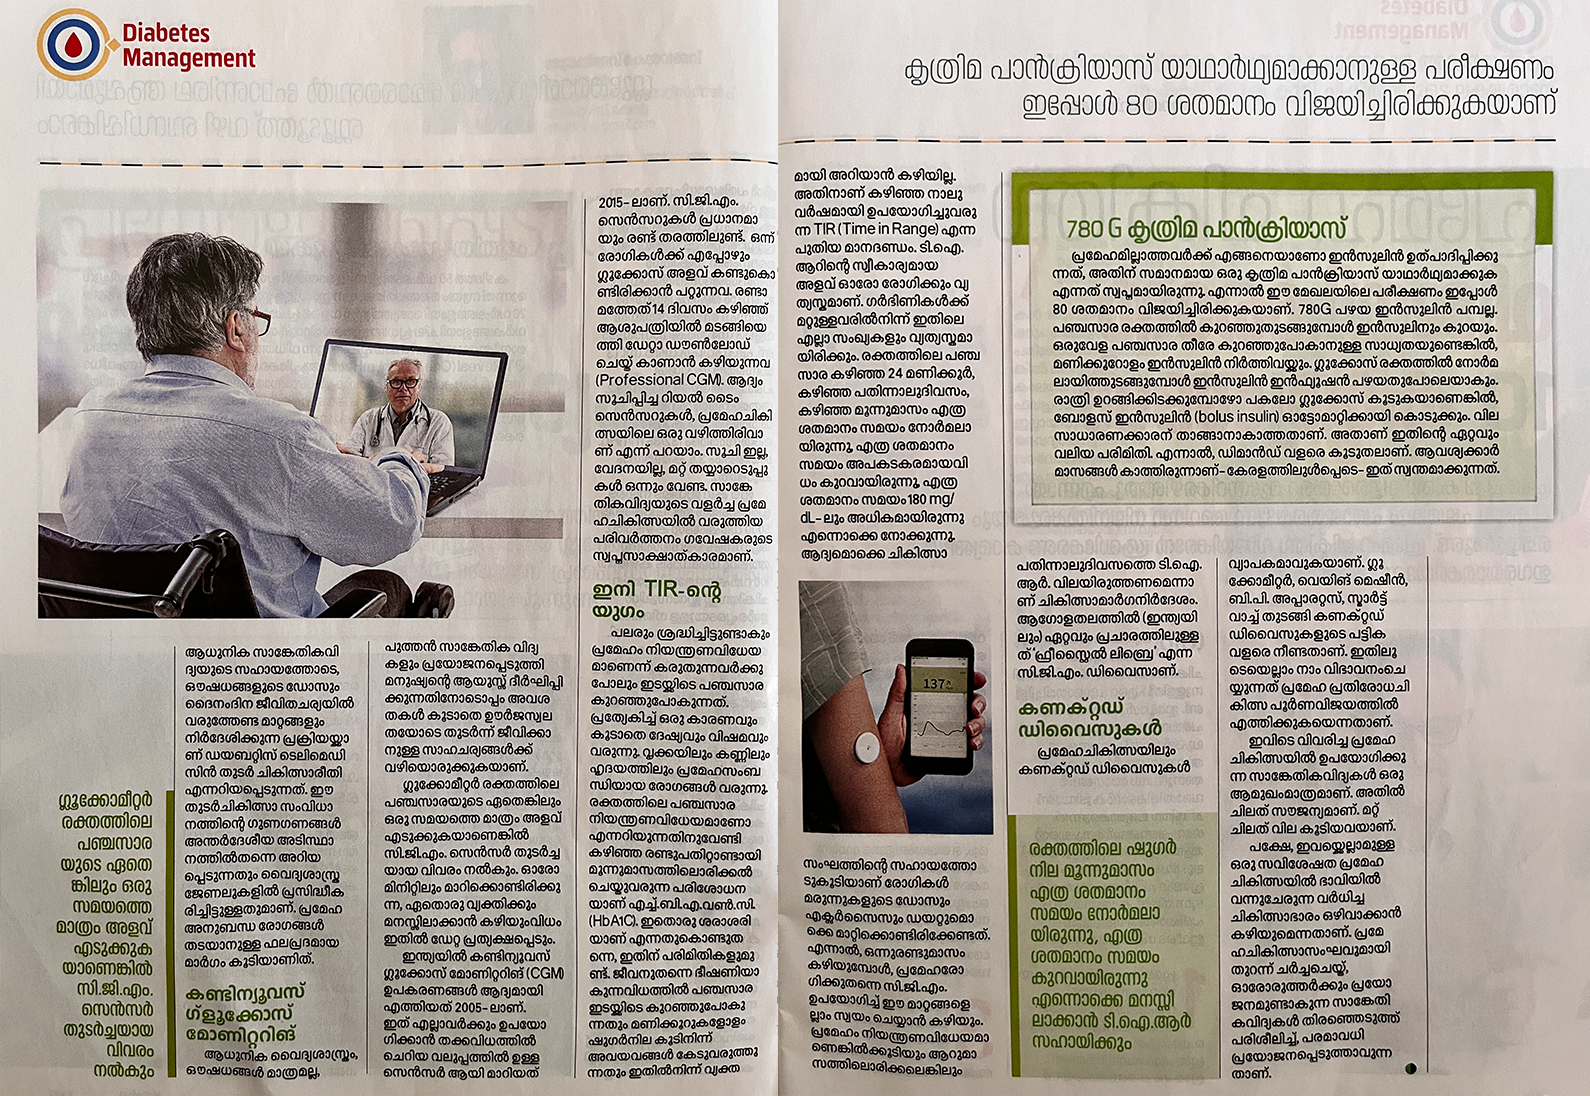 World Diabetes Day Article on Manorama Arogyam Magazine